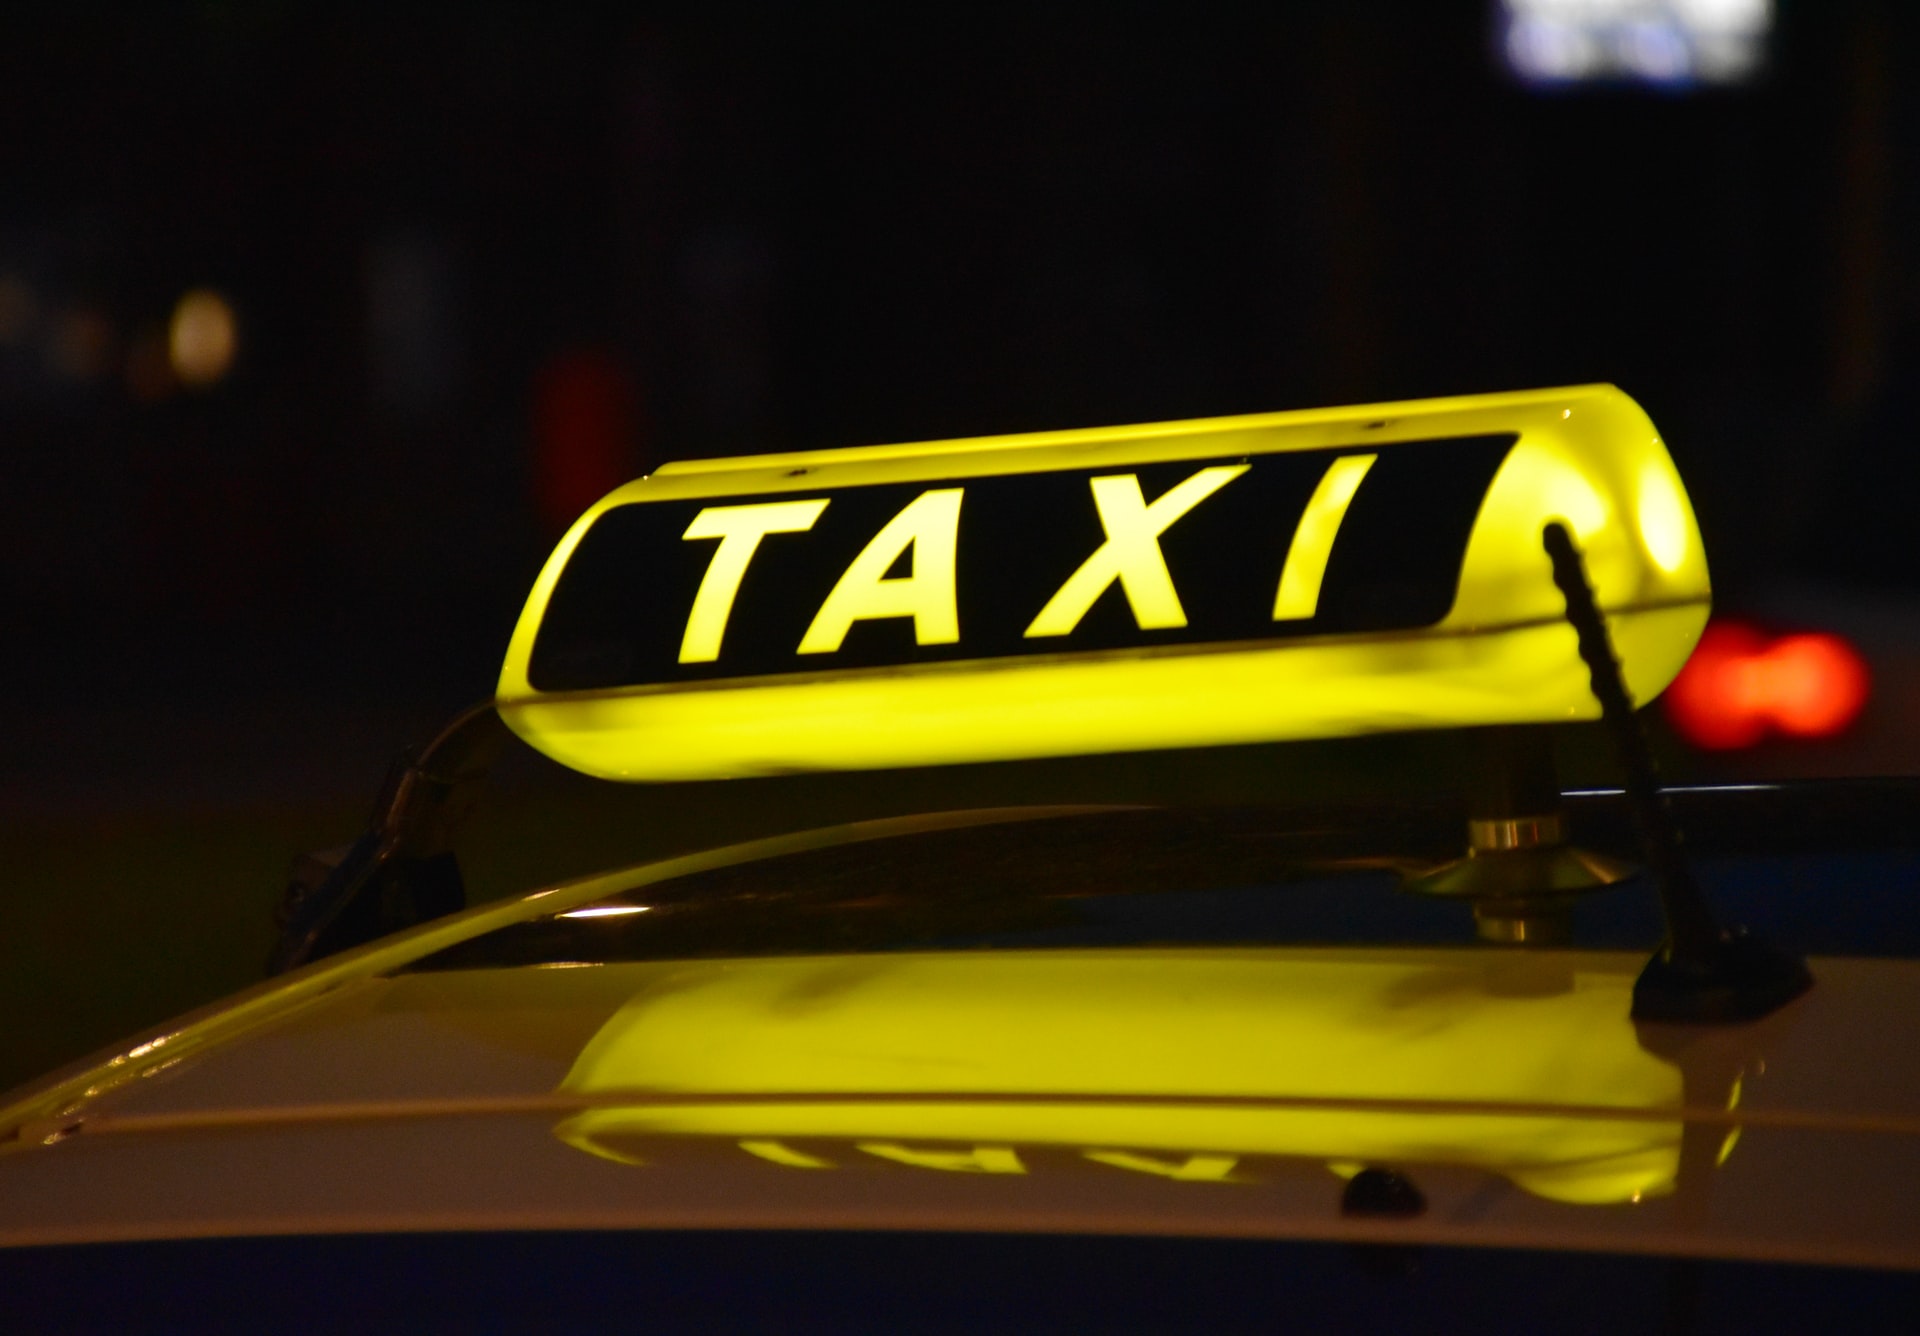 محاولة سرقة يعيقها سائق سيارة أجرة بمدينة كولونيا